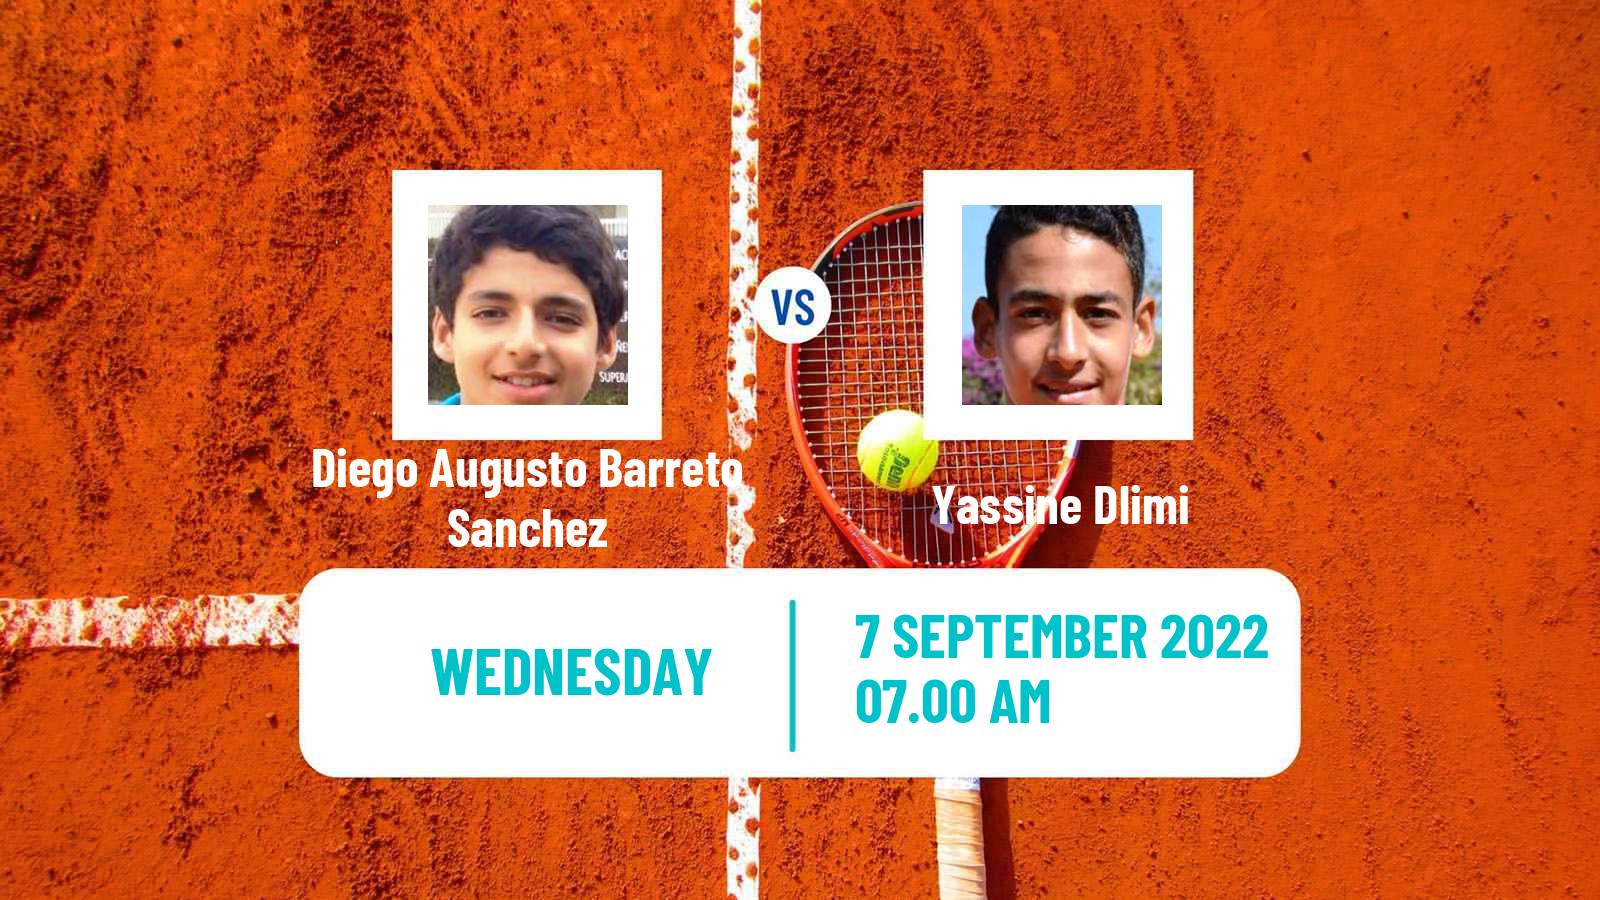 Tennis ITF Tournaments Diego Augusto Barreto Sanchez - Yassine Dlimi